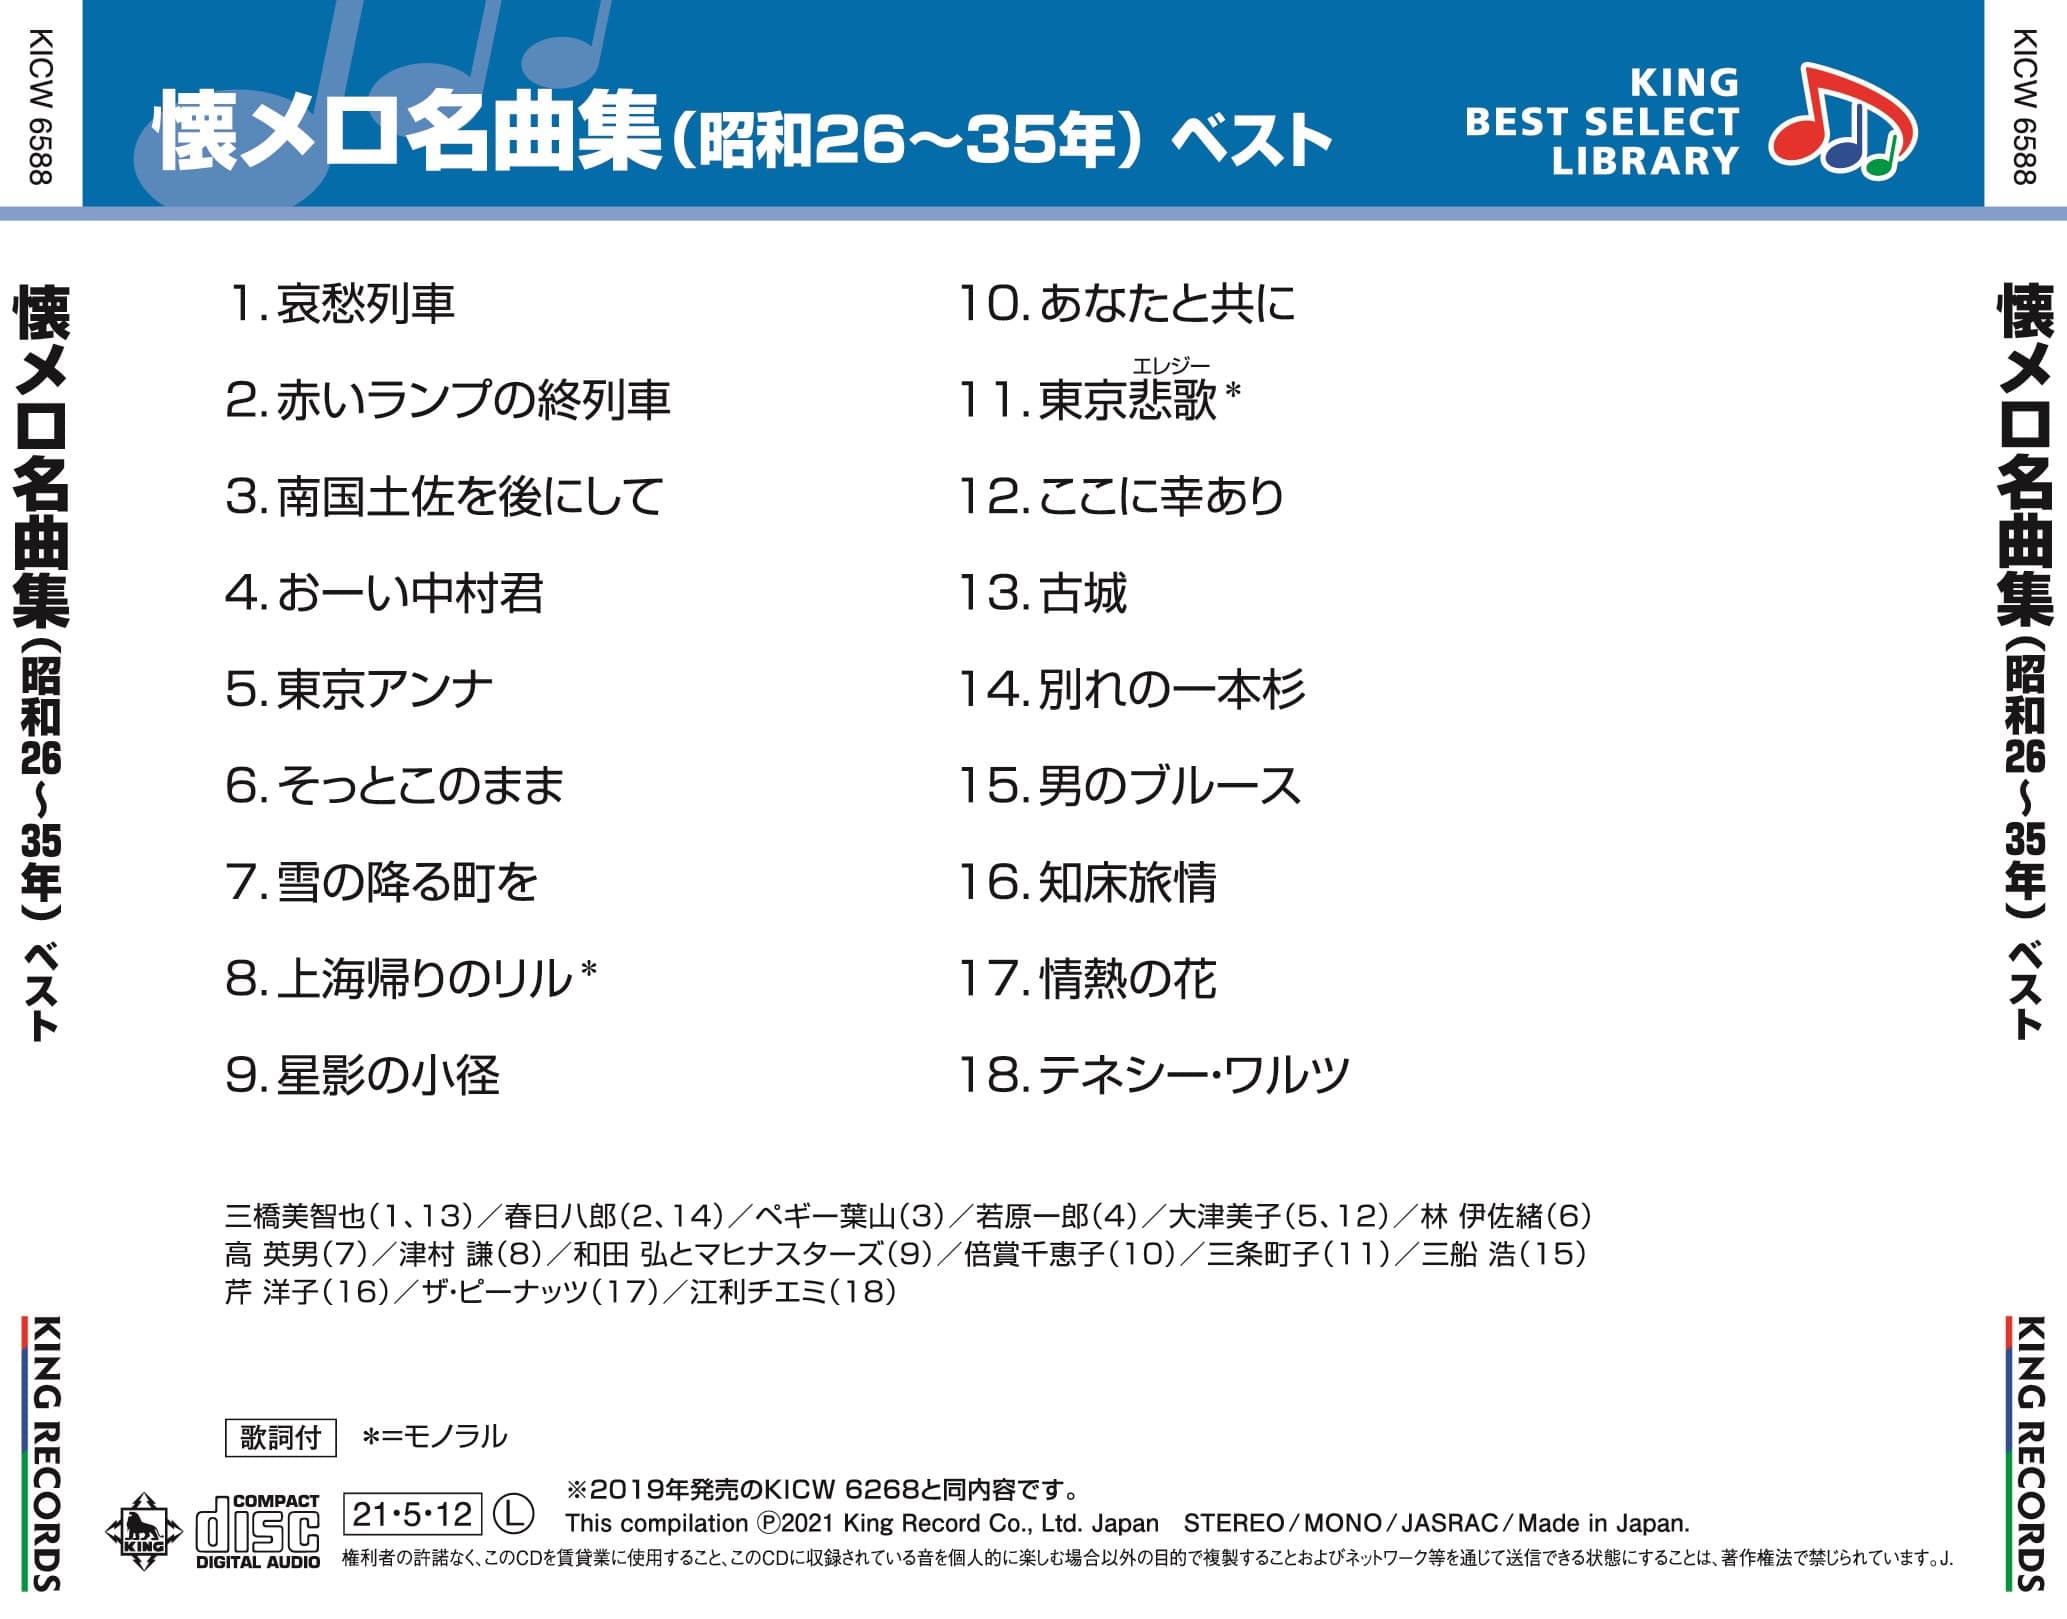 懐メロ名曲集(昭和26〜35年) ベスト キング・ベスト・セレクト・ライブラリー2021